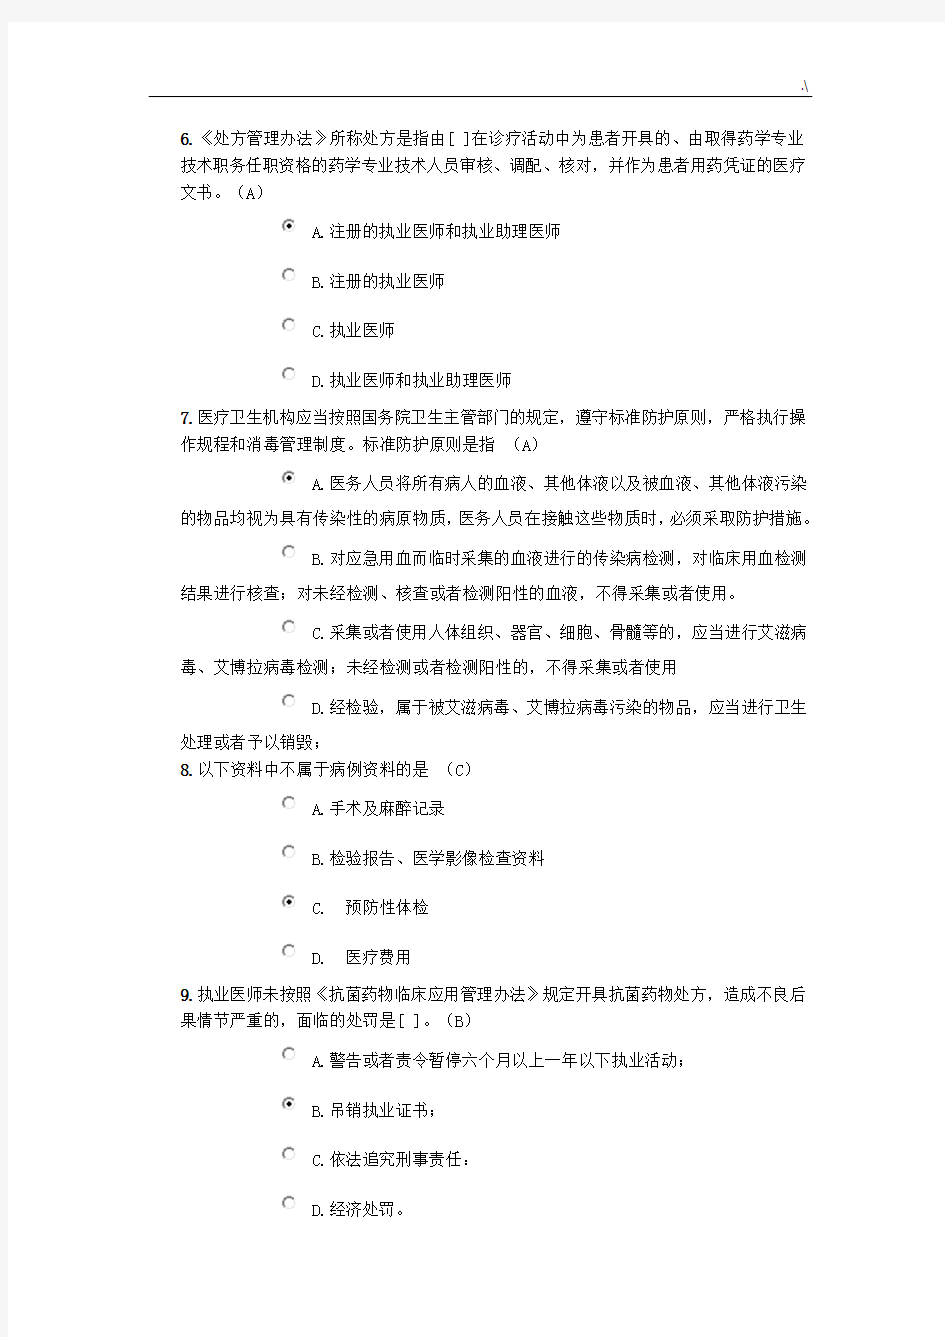 2018年度北京医师定期考核法律法规考试